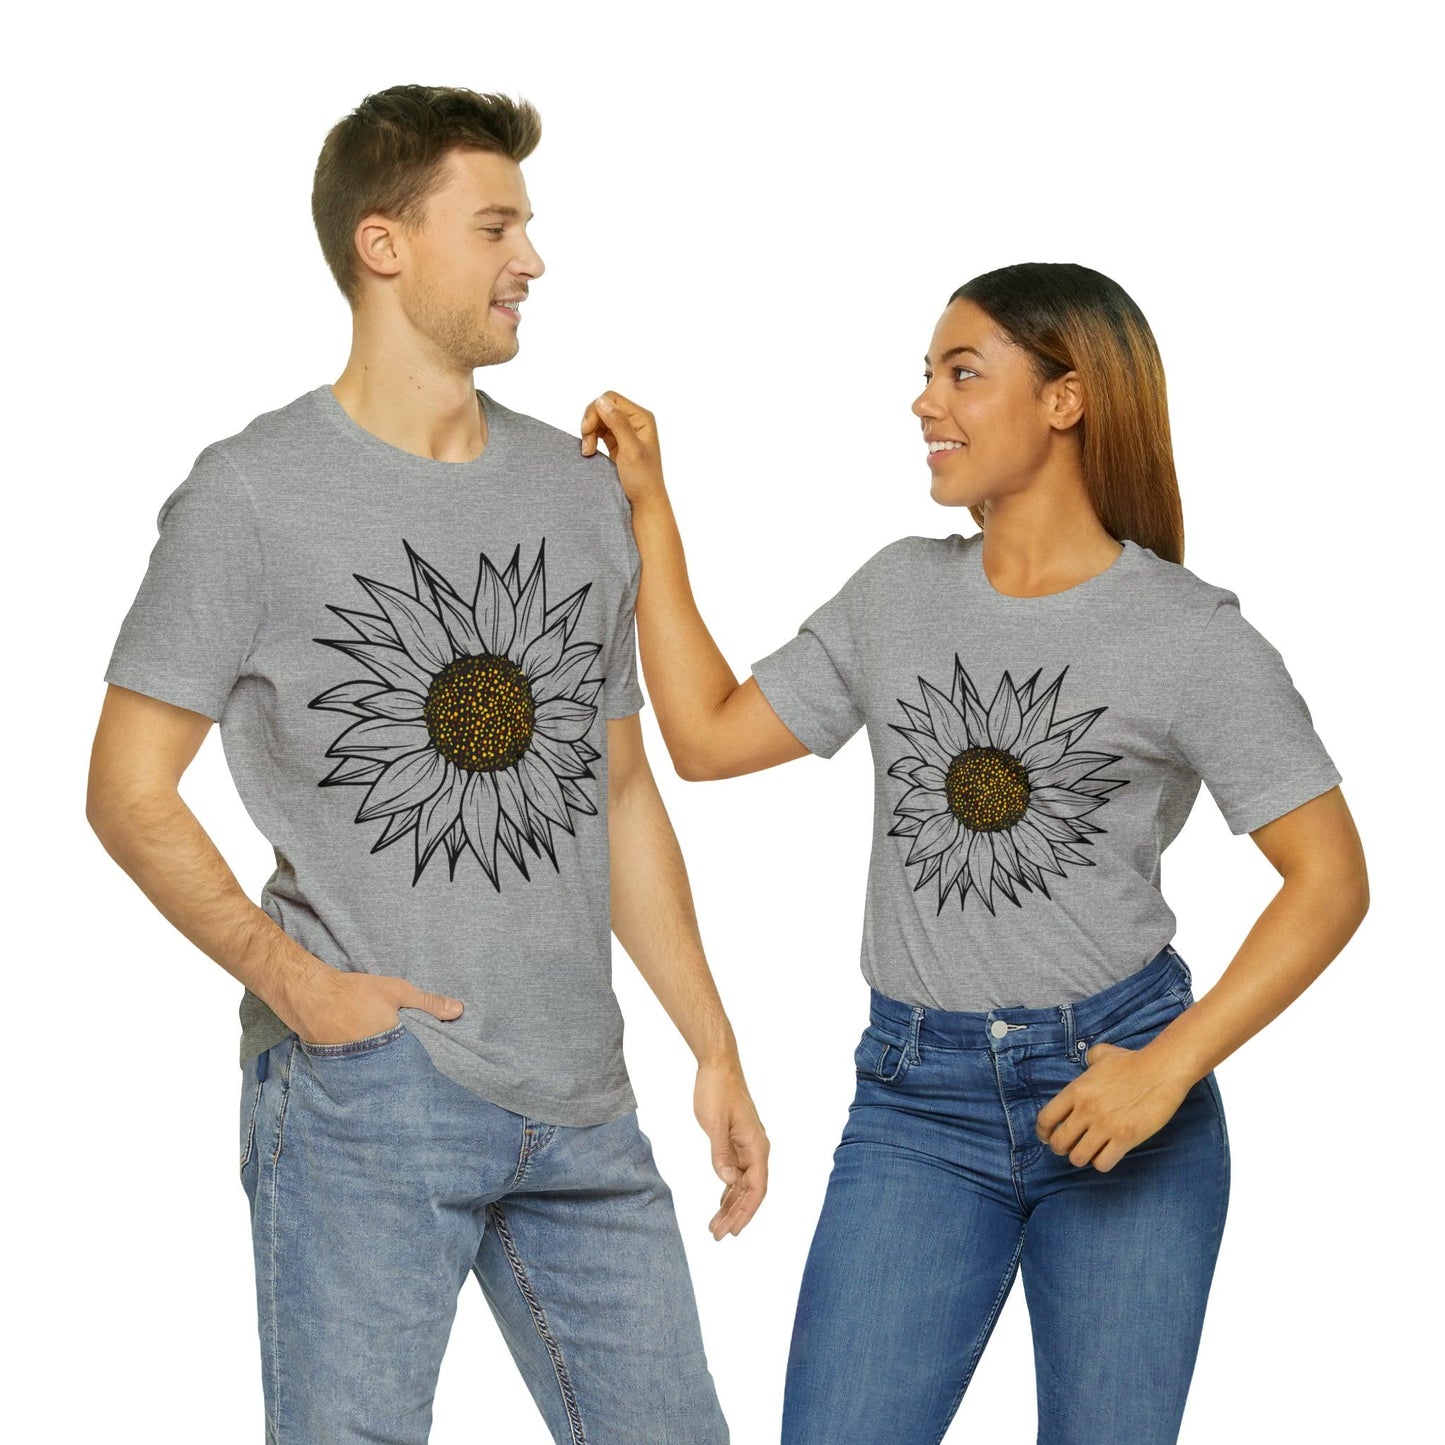 Sunflower Shirt, Floral Tee Shirt, Flower Shirt, Garden Shirt, Womens Fall Summer Shirt Sunshine Tee, Gift for Gardener, Nature love shirt